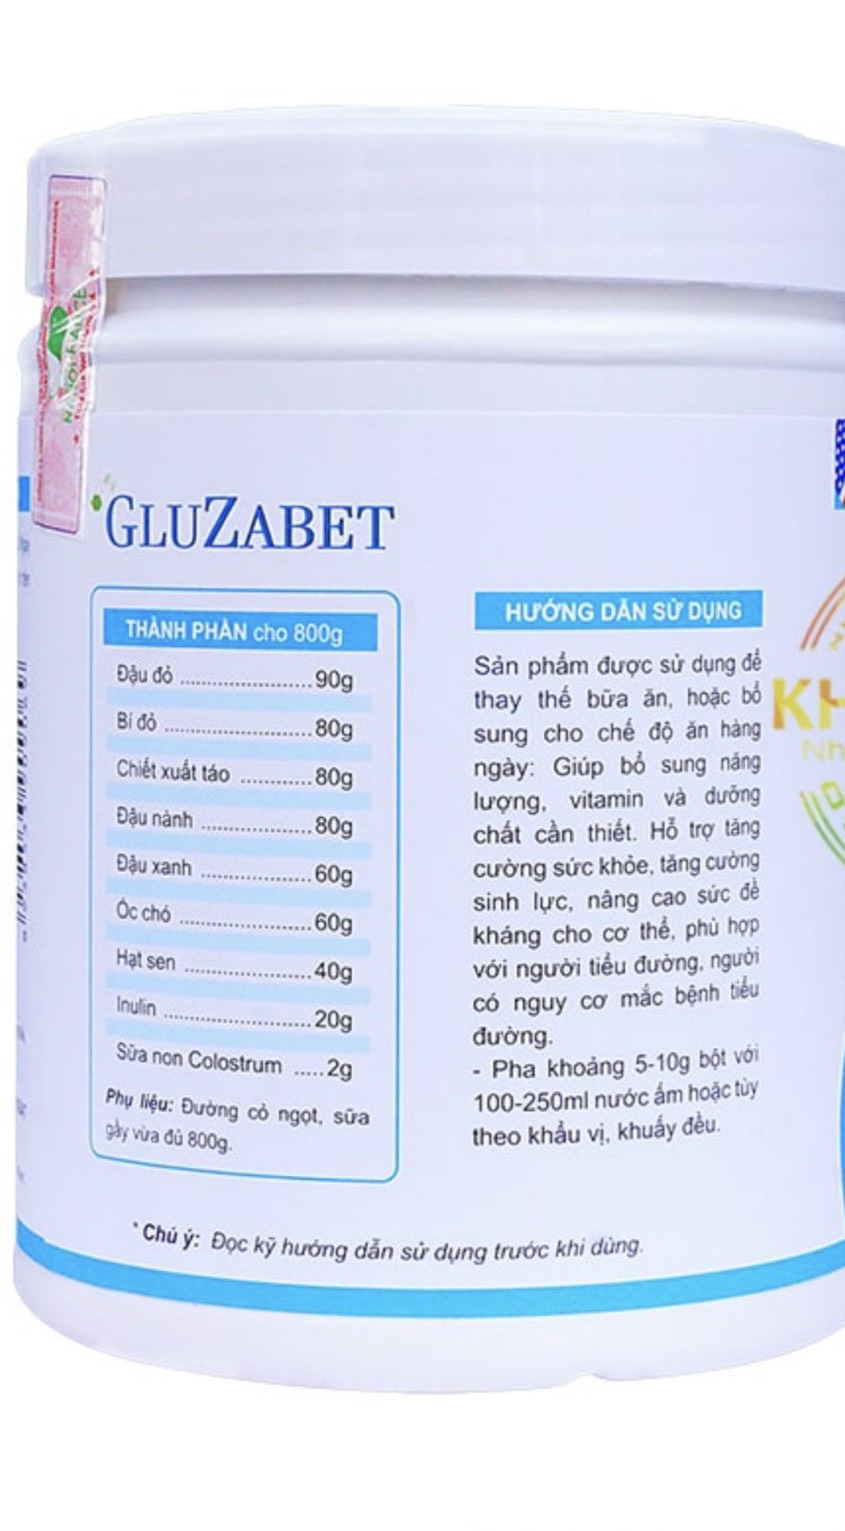 Công dụng của sữa Gluzabet được ghi trên nhãn mác.